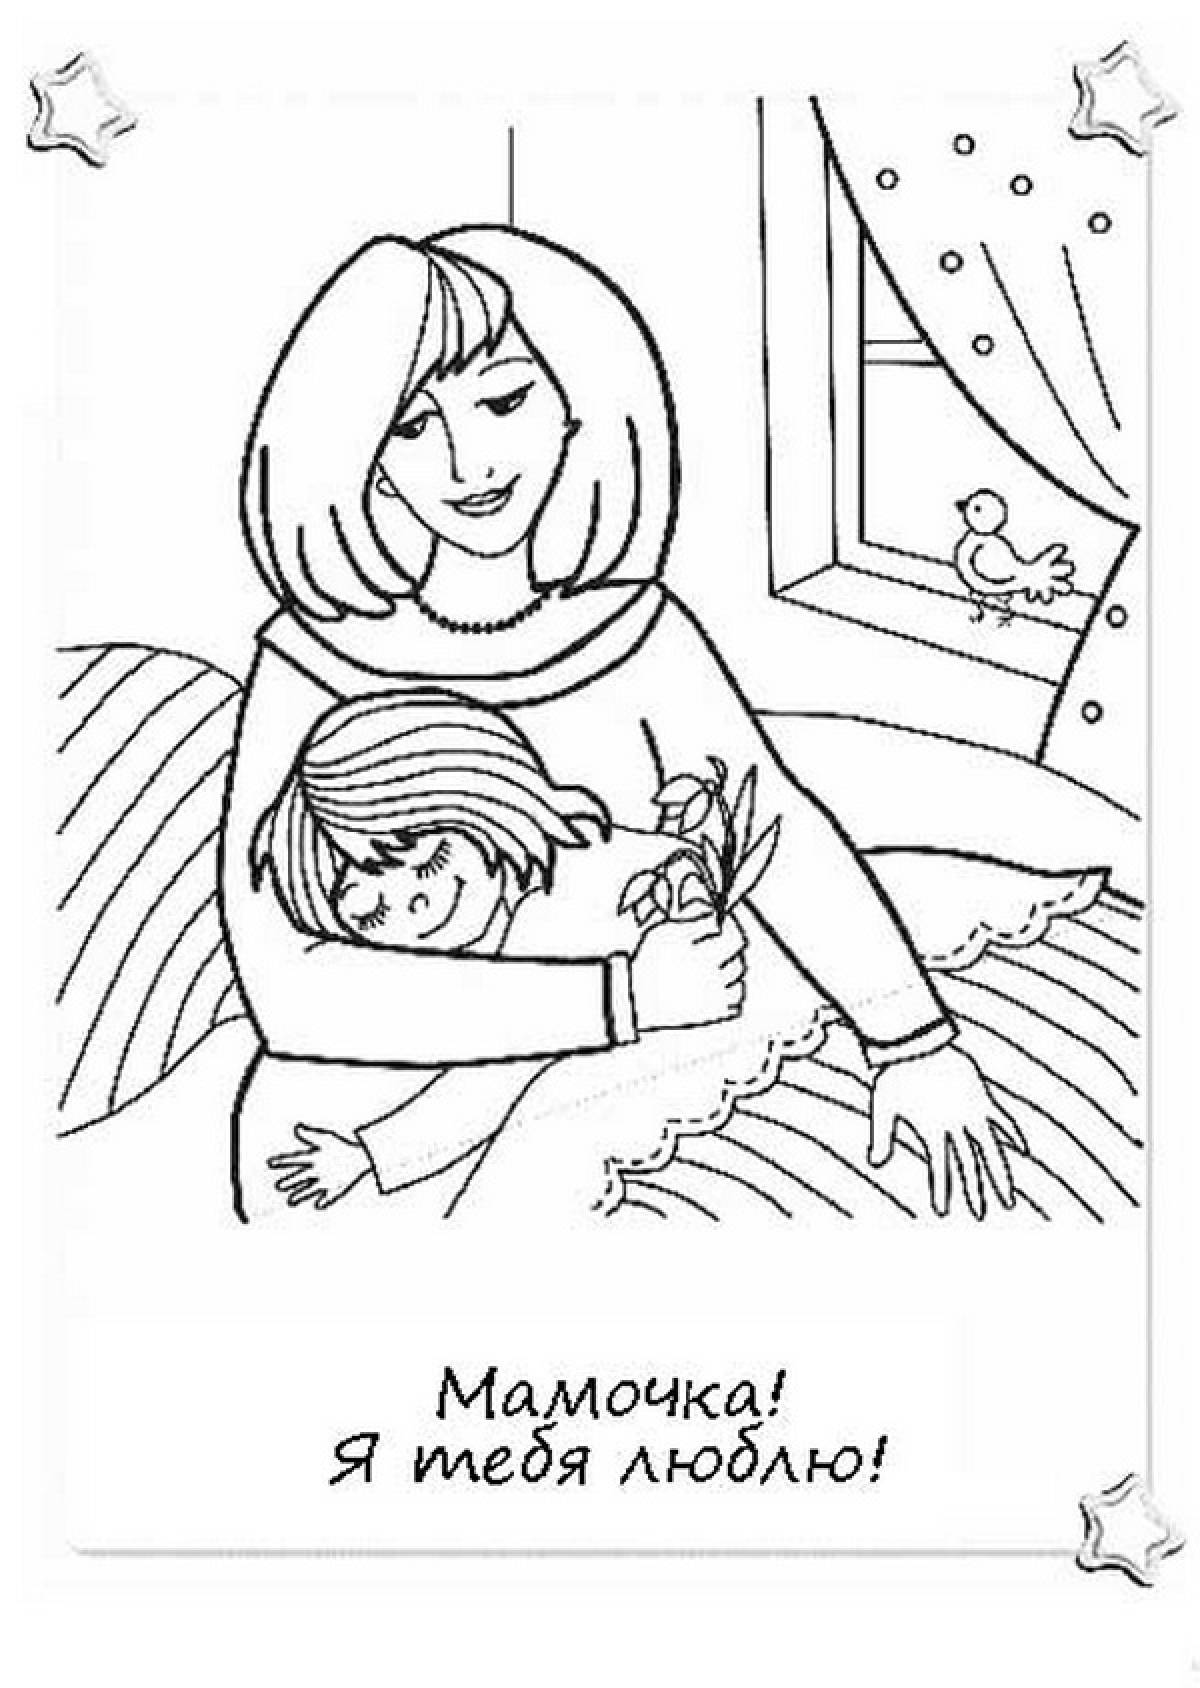 Раскраска про маму. Раскраска ко Дню матери. Рисунок для мамы раскраска. Рисунок маме на день матери. Мама раскраска для детей.